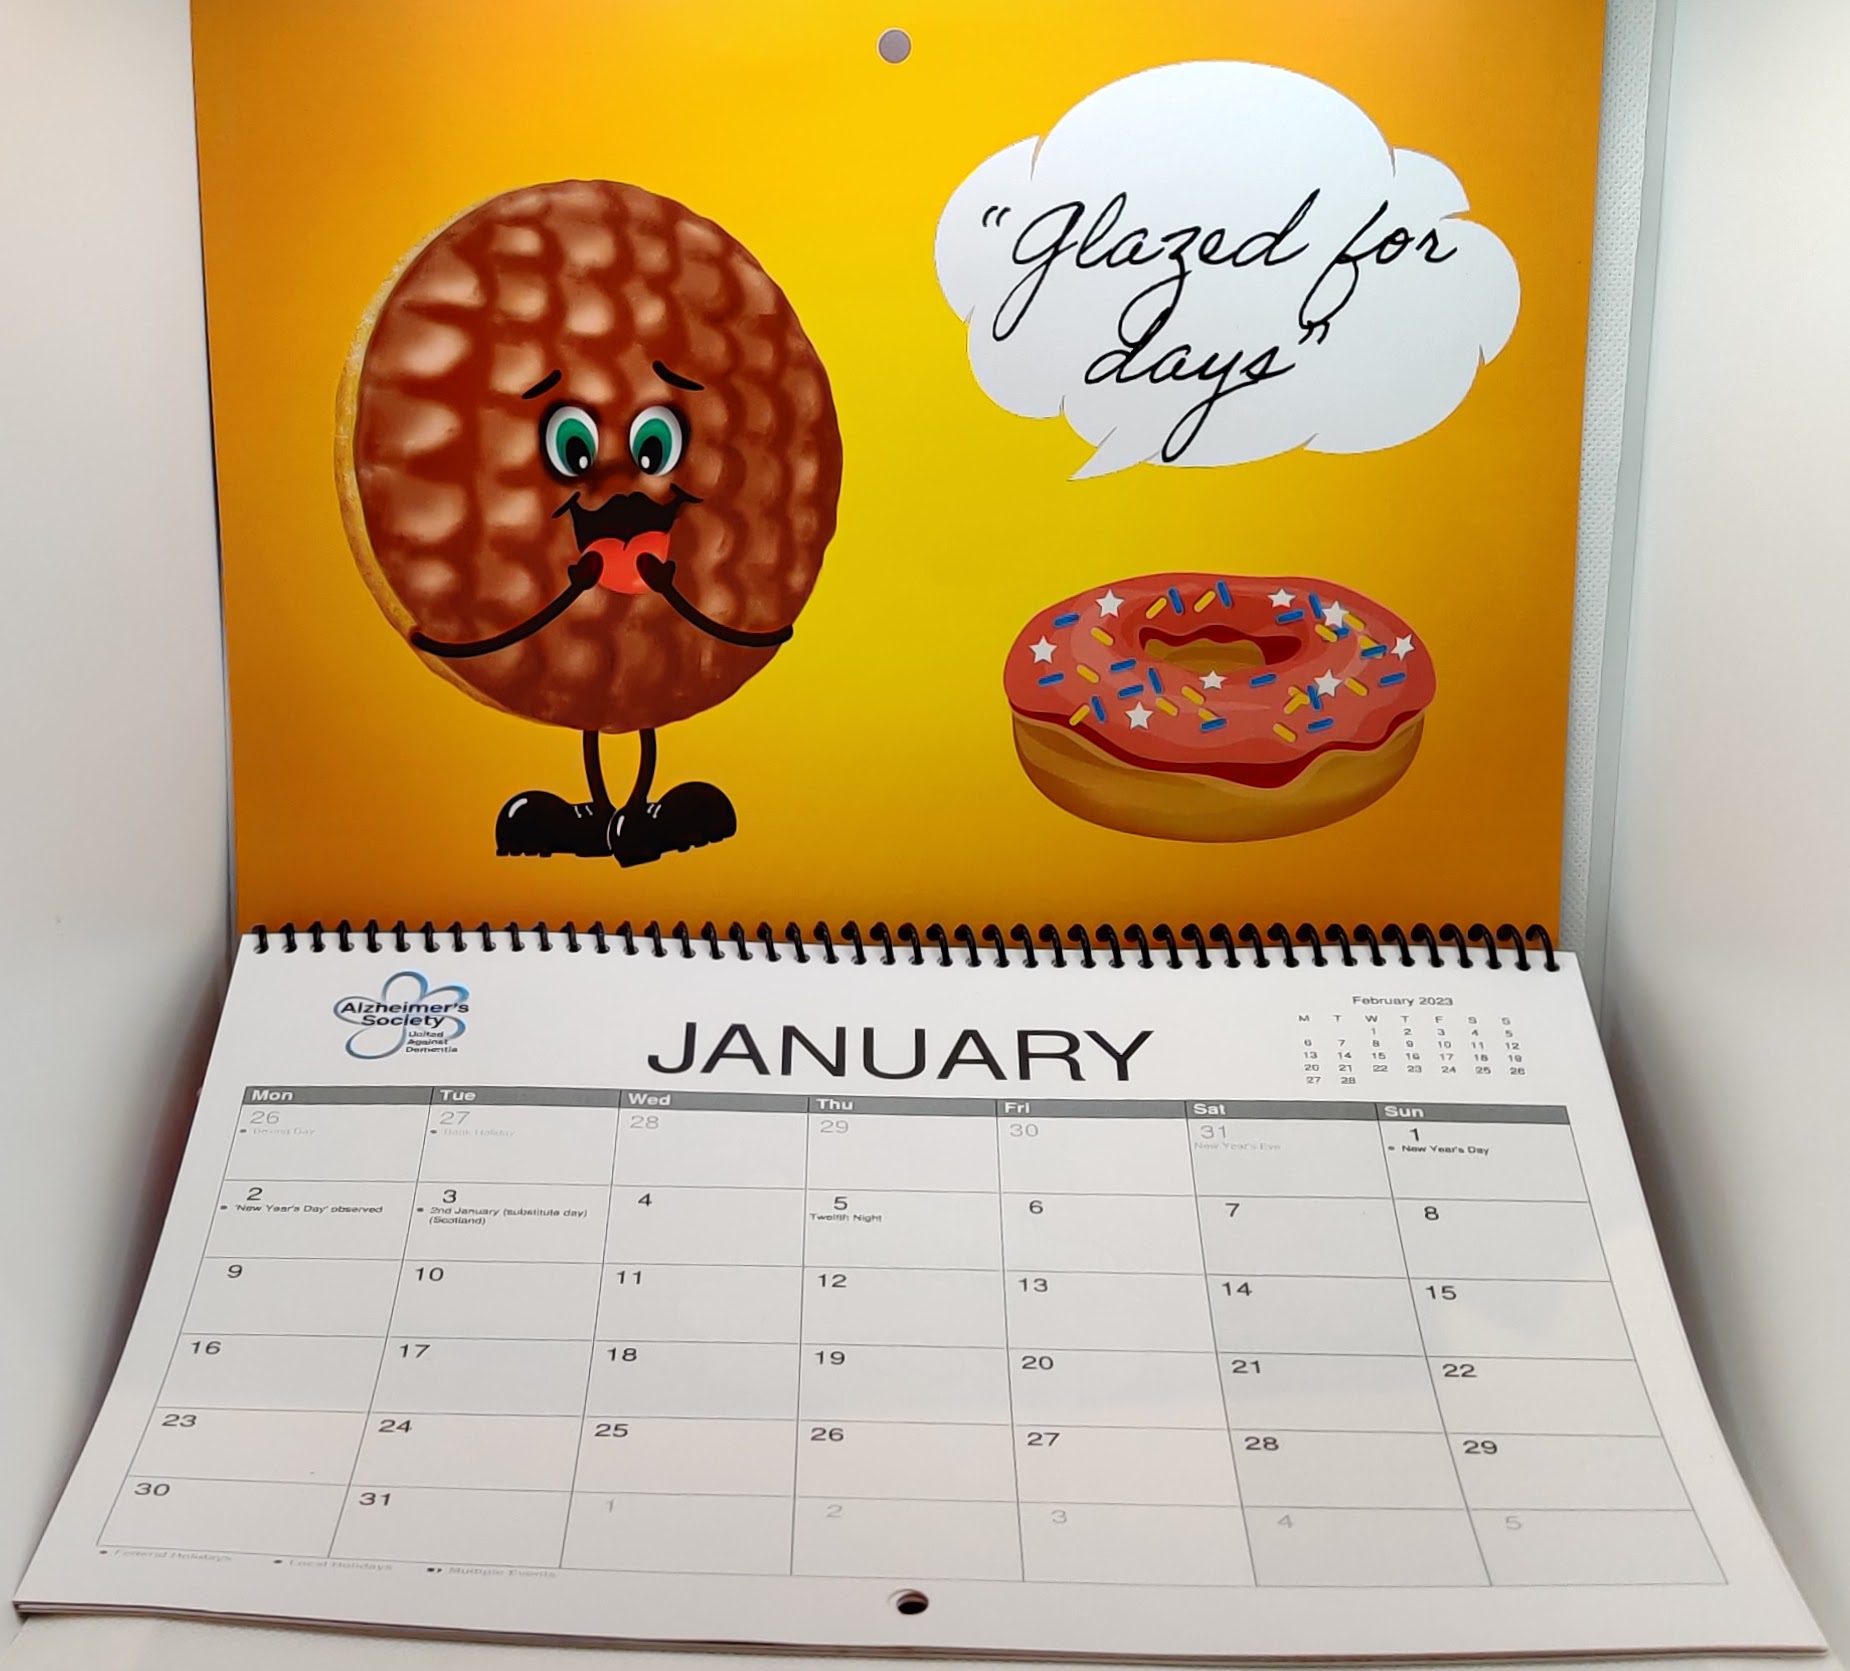 https://www.killaprint.uk/wp-content/uploads/2022/11/alzheimers-calendar-cookies-1.jpg